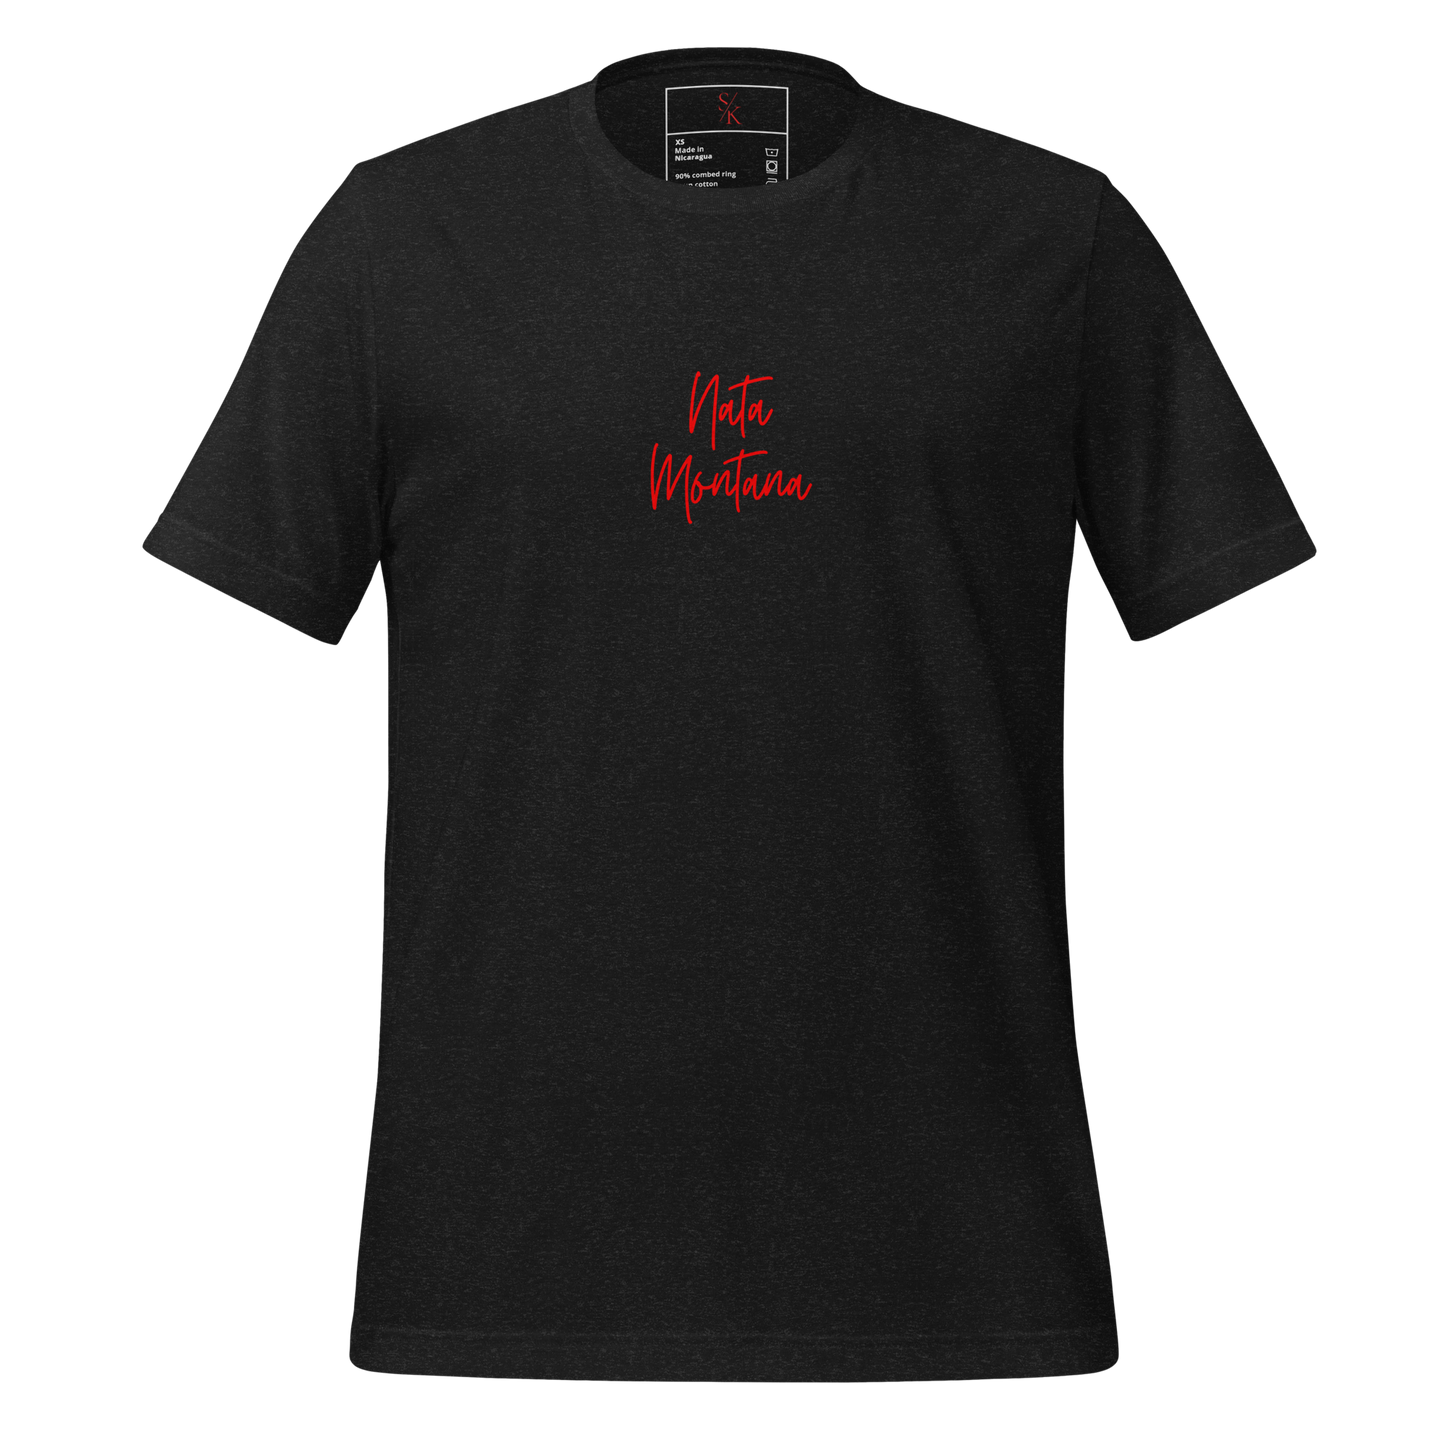 Corridos Tumbados T-Shirt (Black)